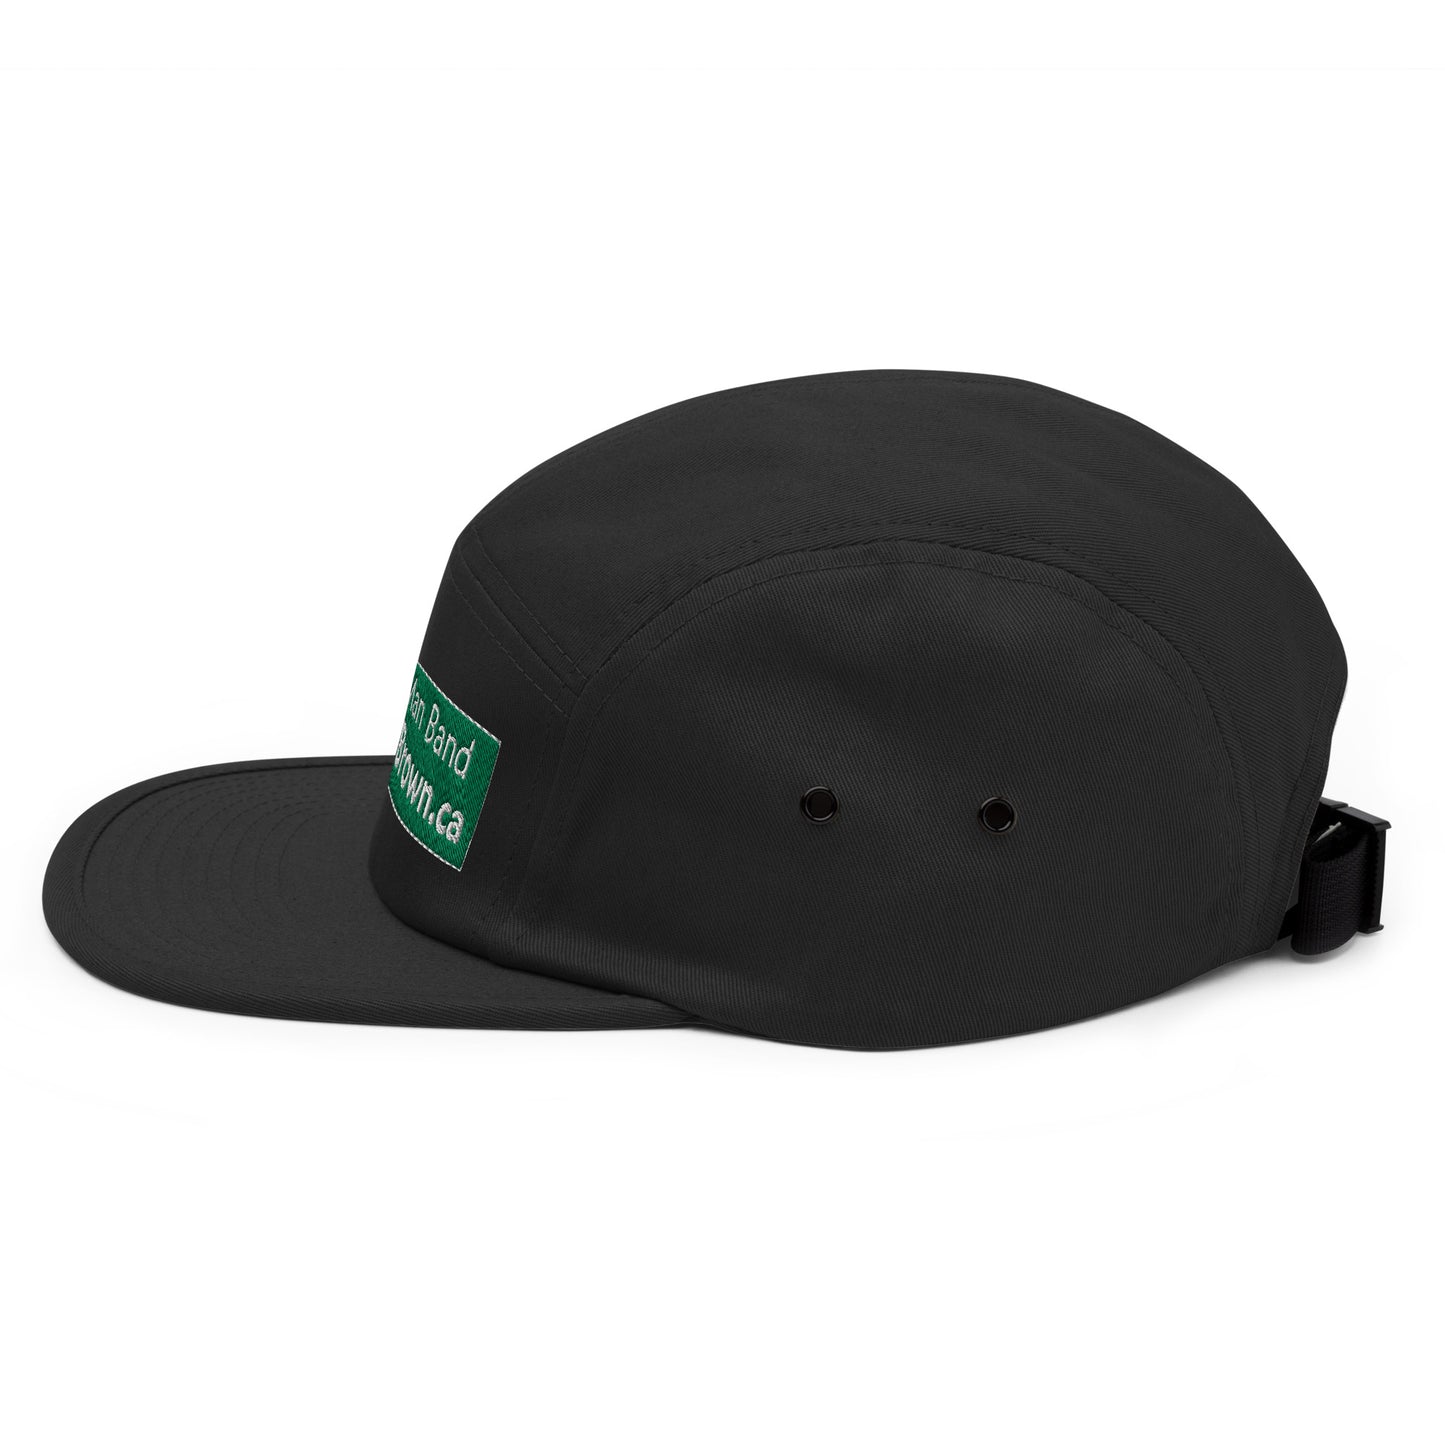 'CB' 5-panel cap hat